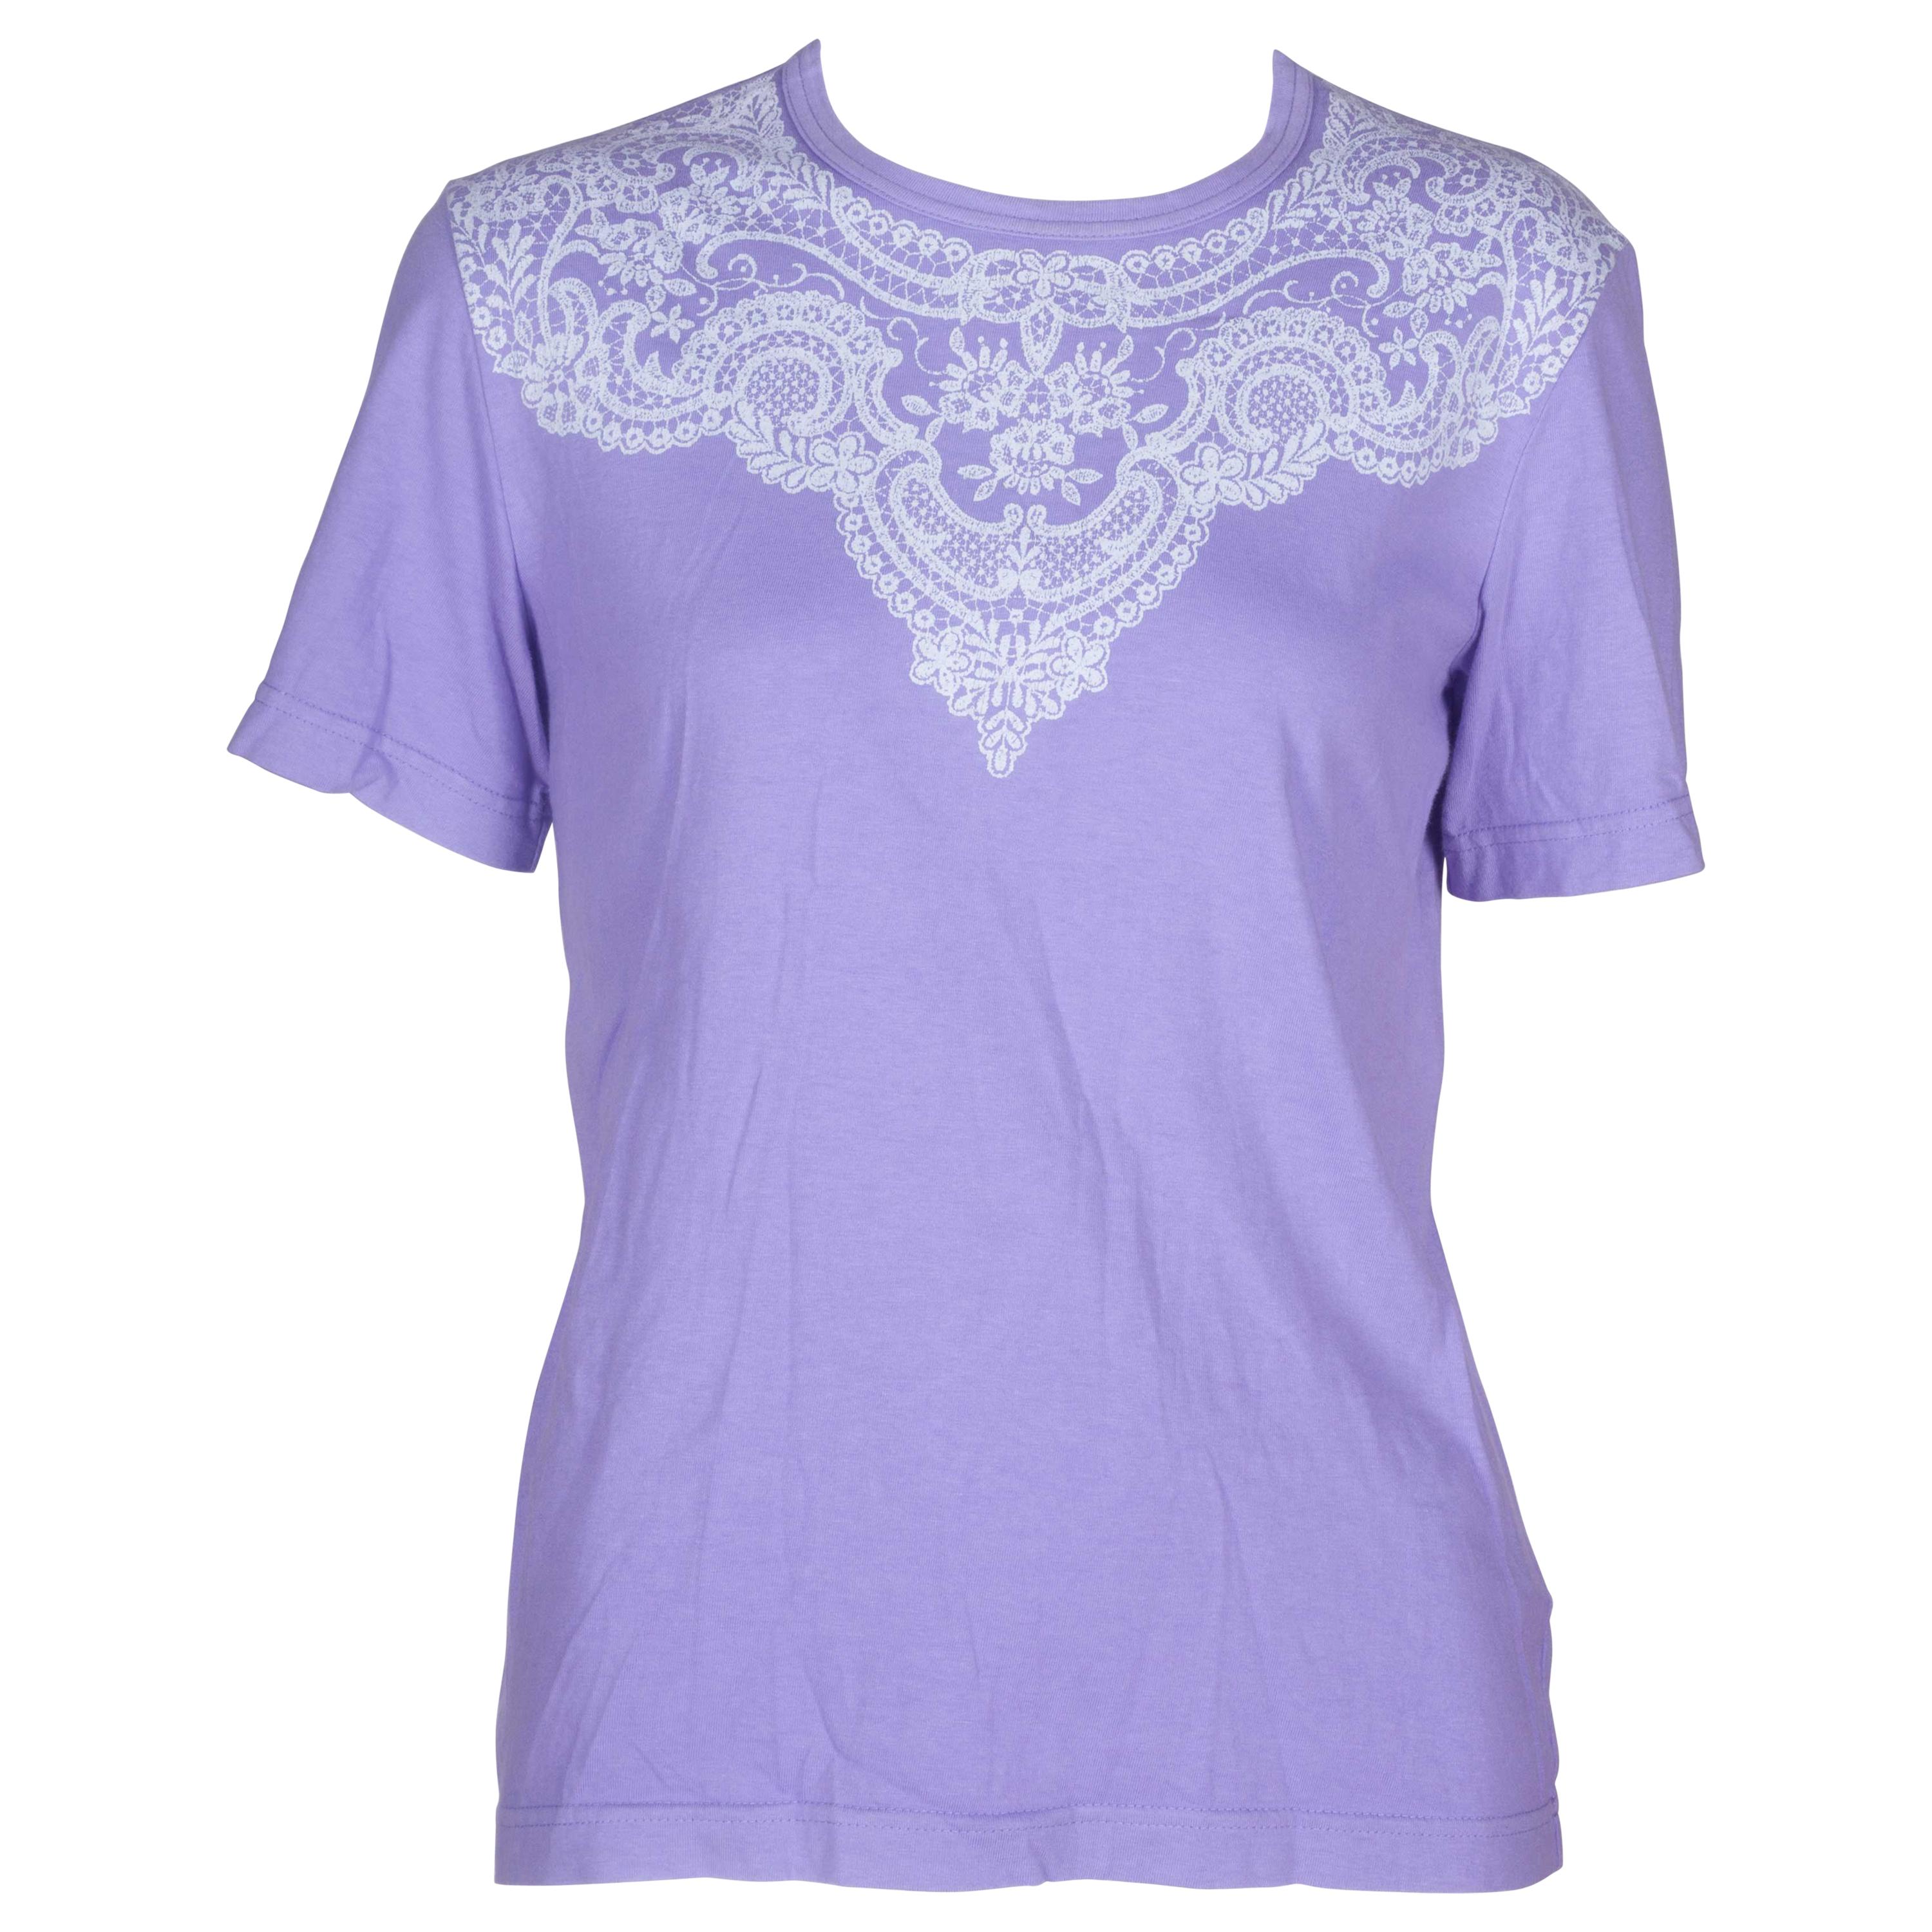 Comme des Garçons Purple T-shirt with Lace Motif, 2006